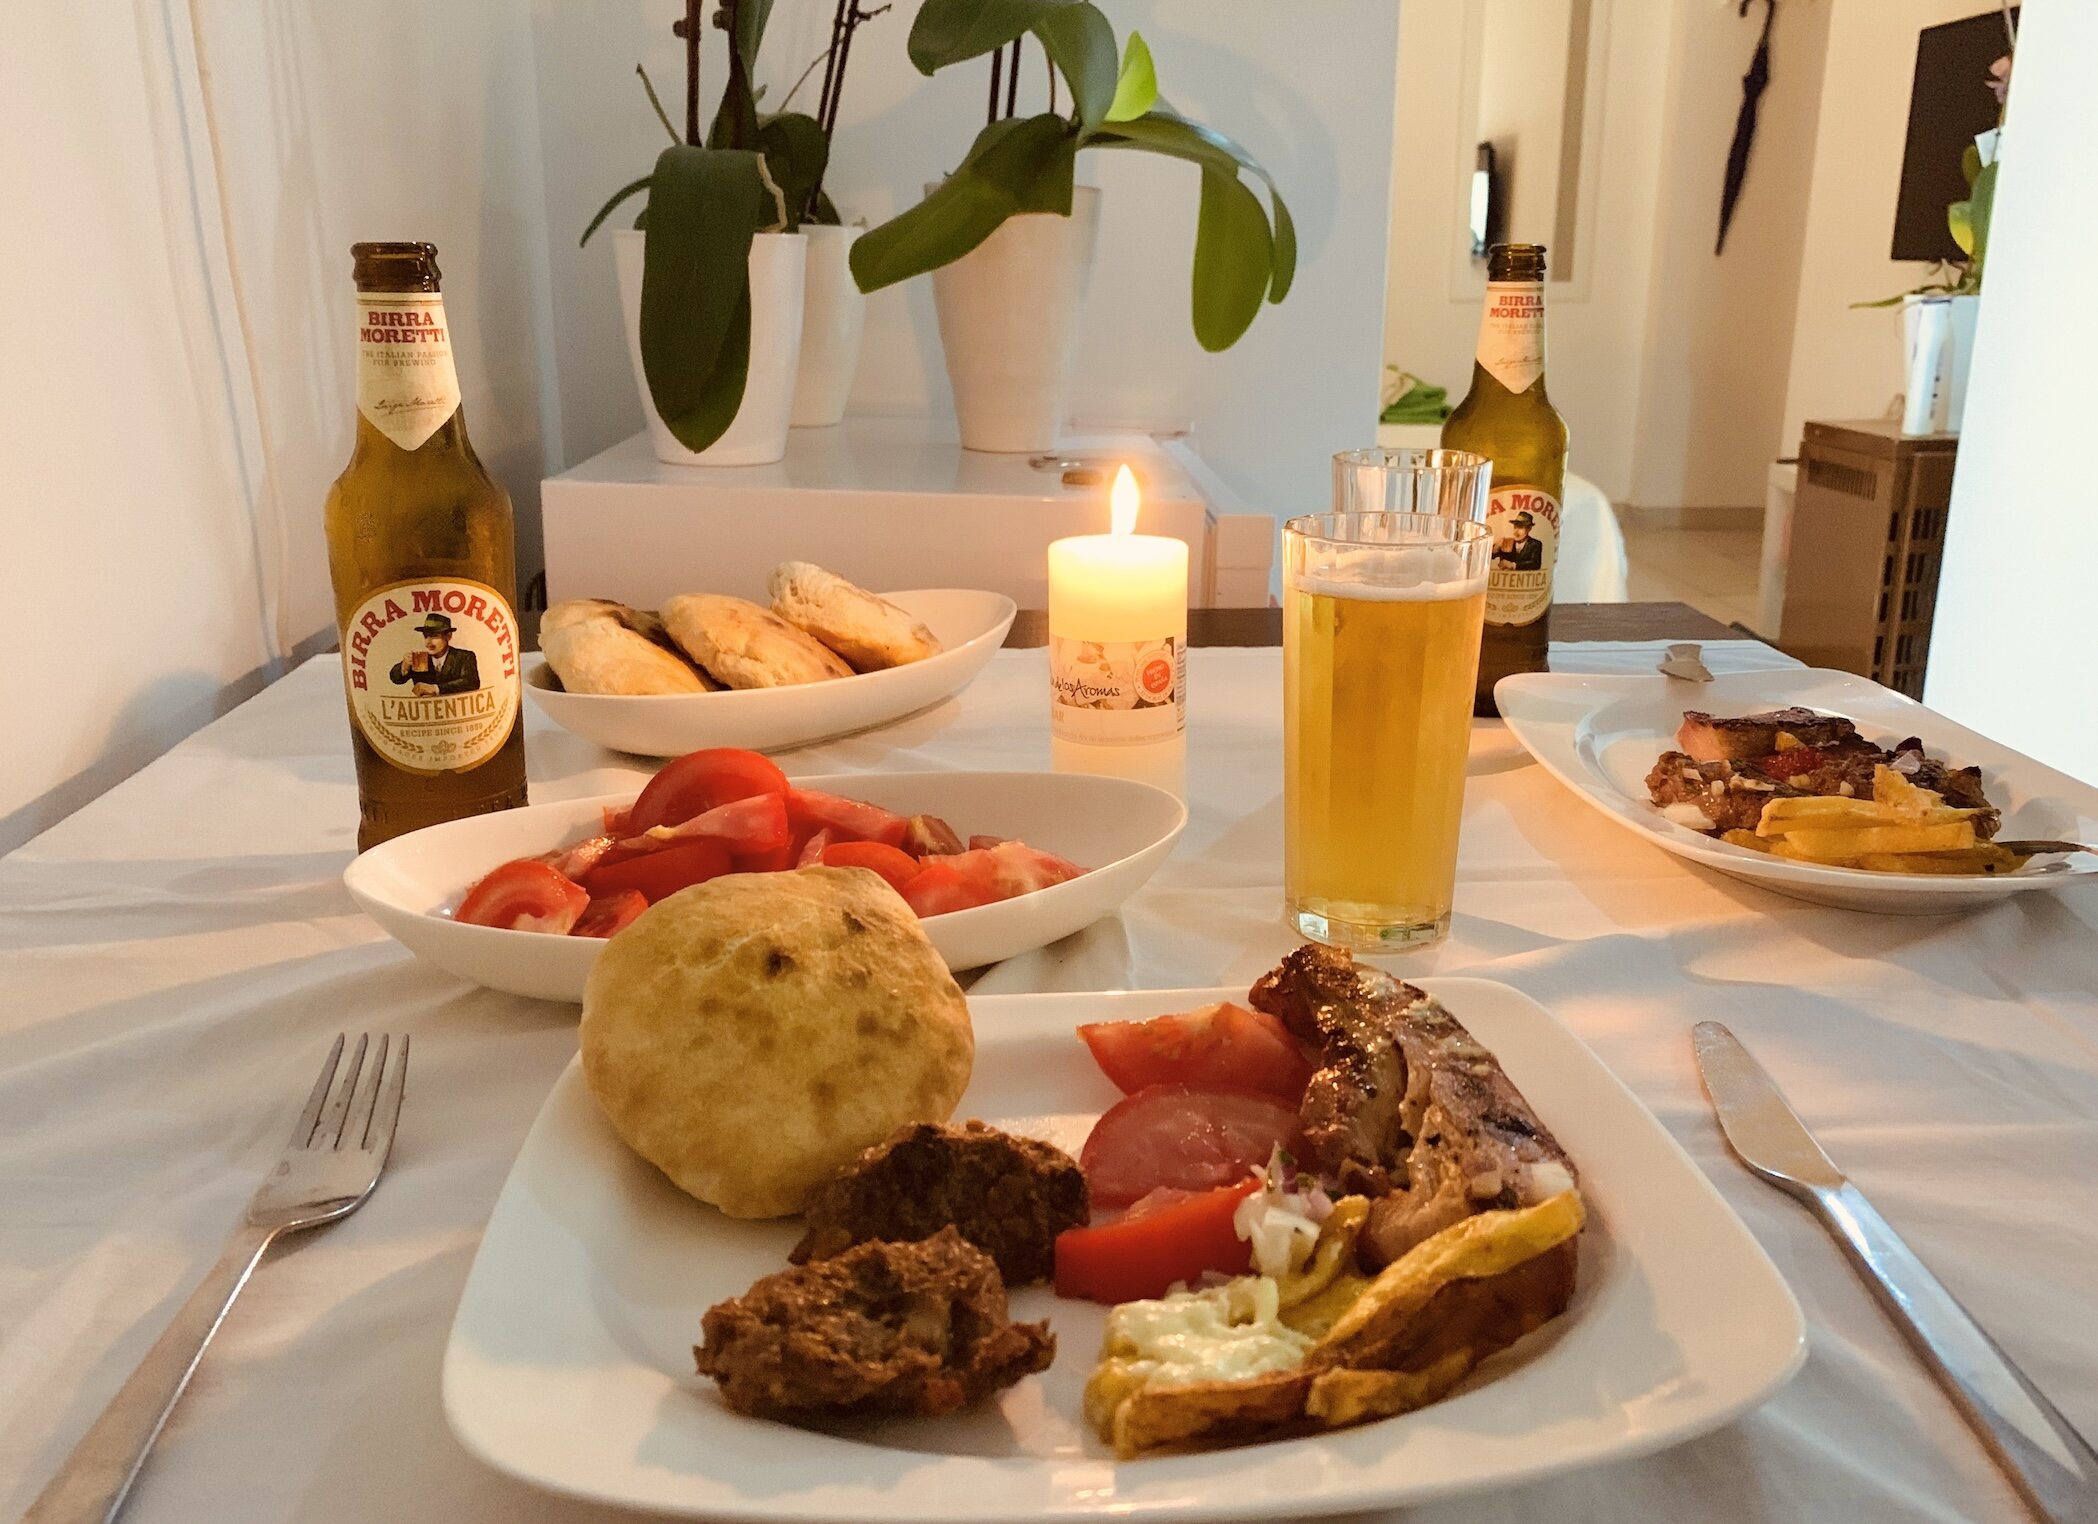 Takeaway dinner from Bistro Trandafilović.